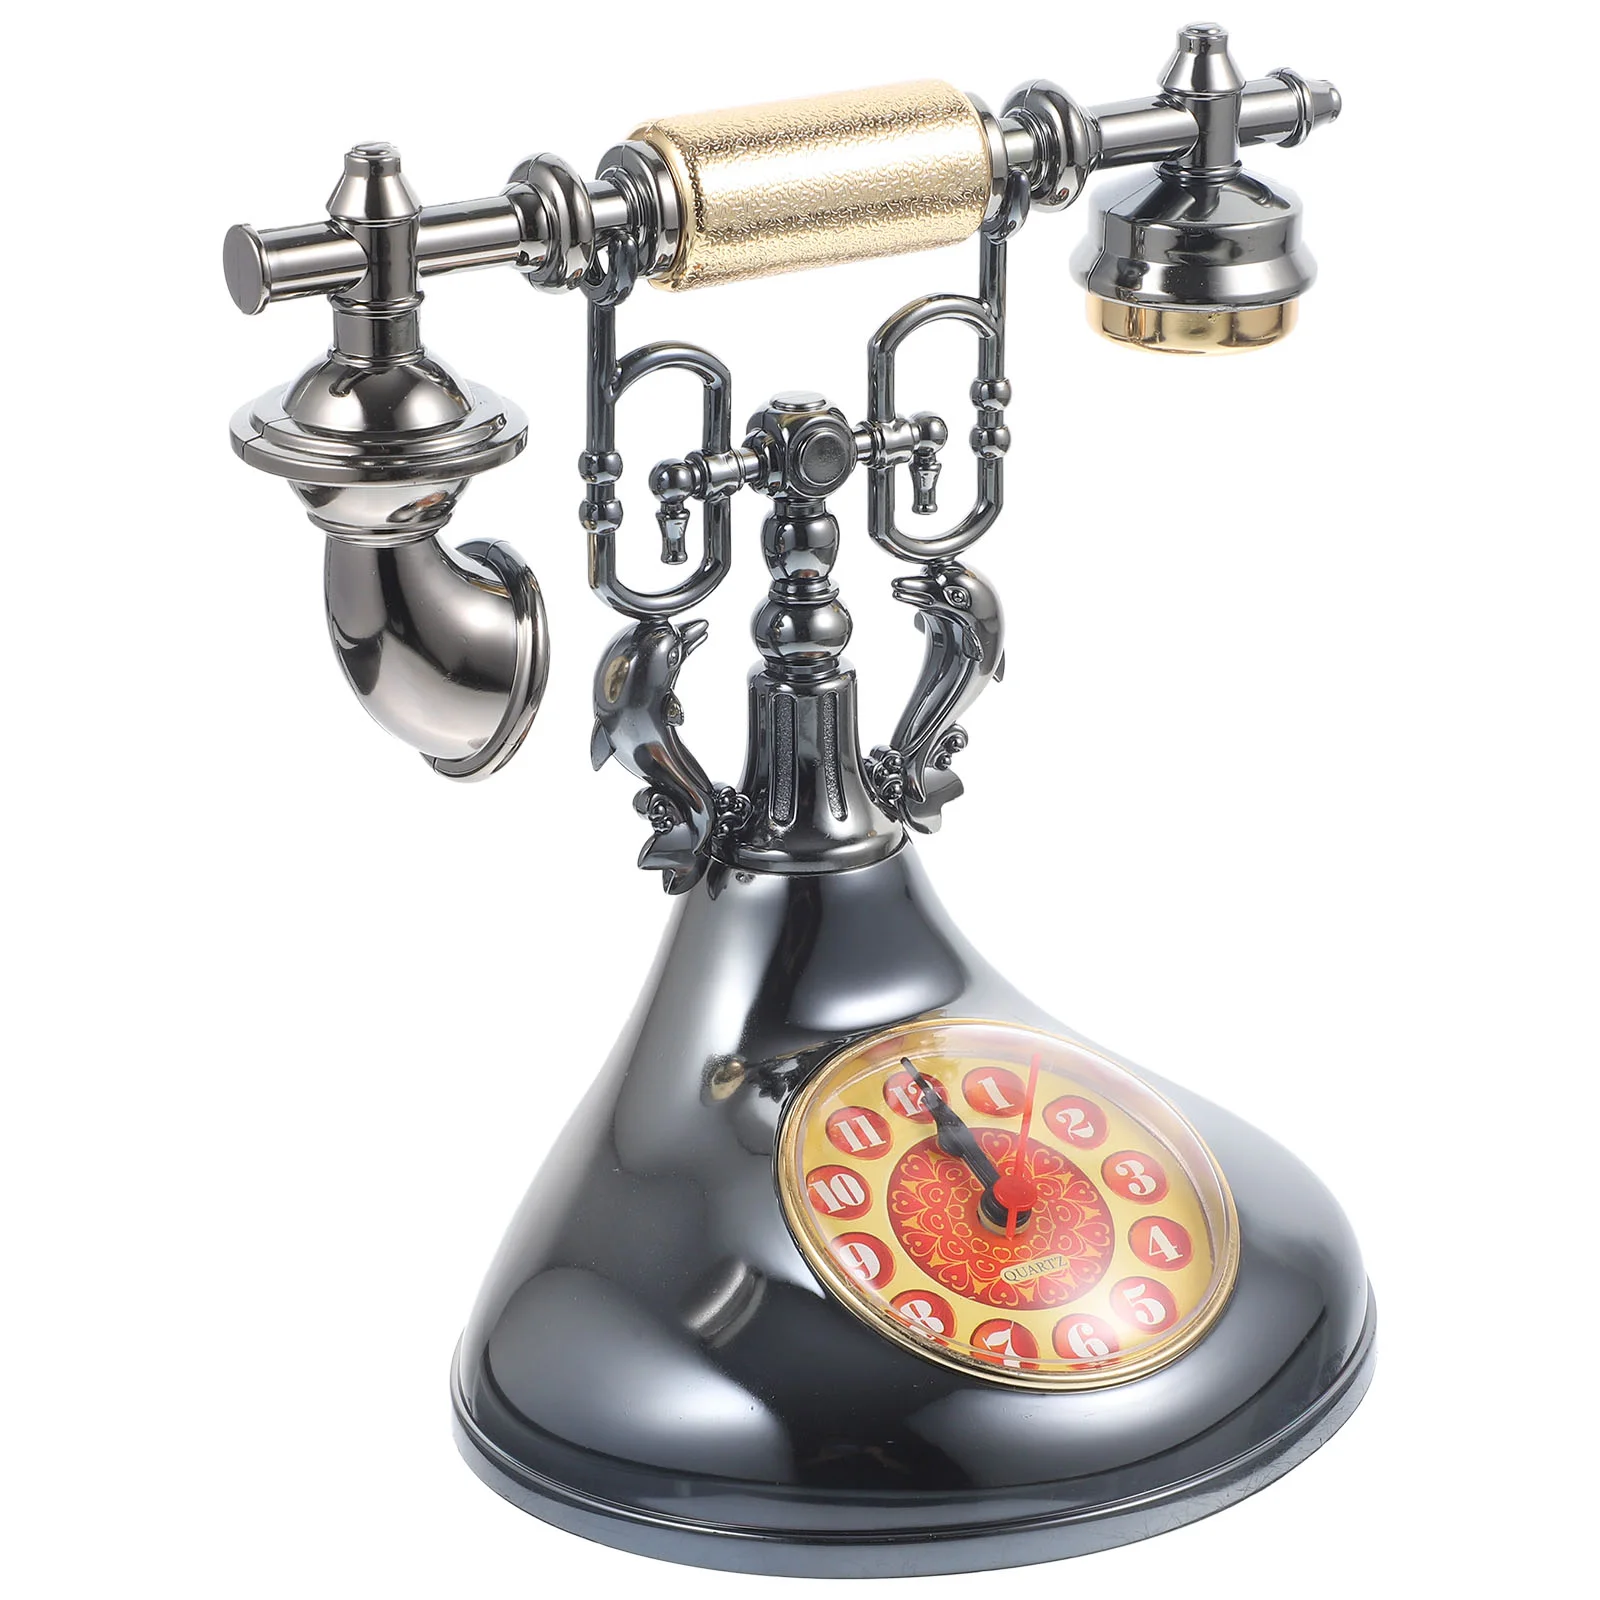 

Vintage Ollectible Figurine Retro Landline Telephone Vintage Table Clock Decoration Vinatge Telephone Clock